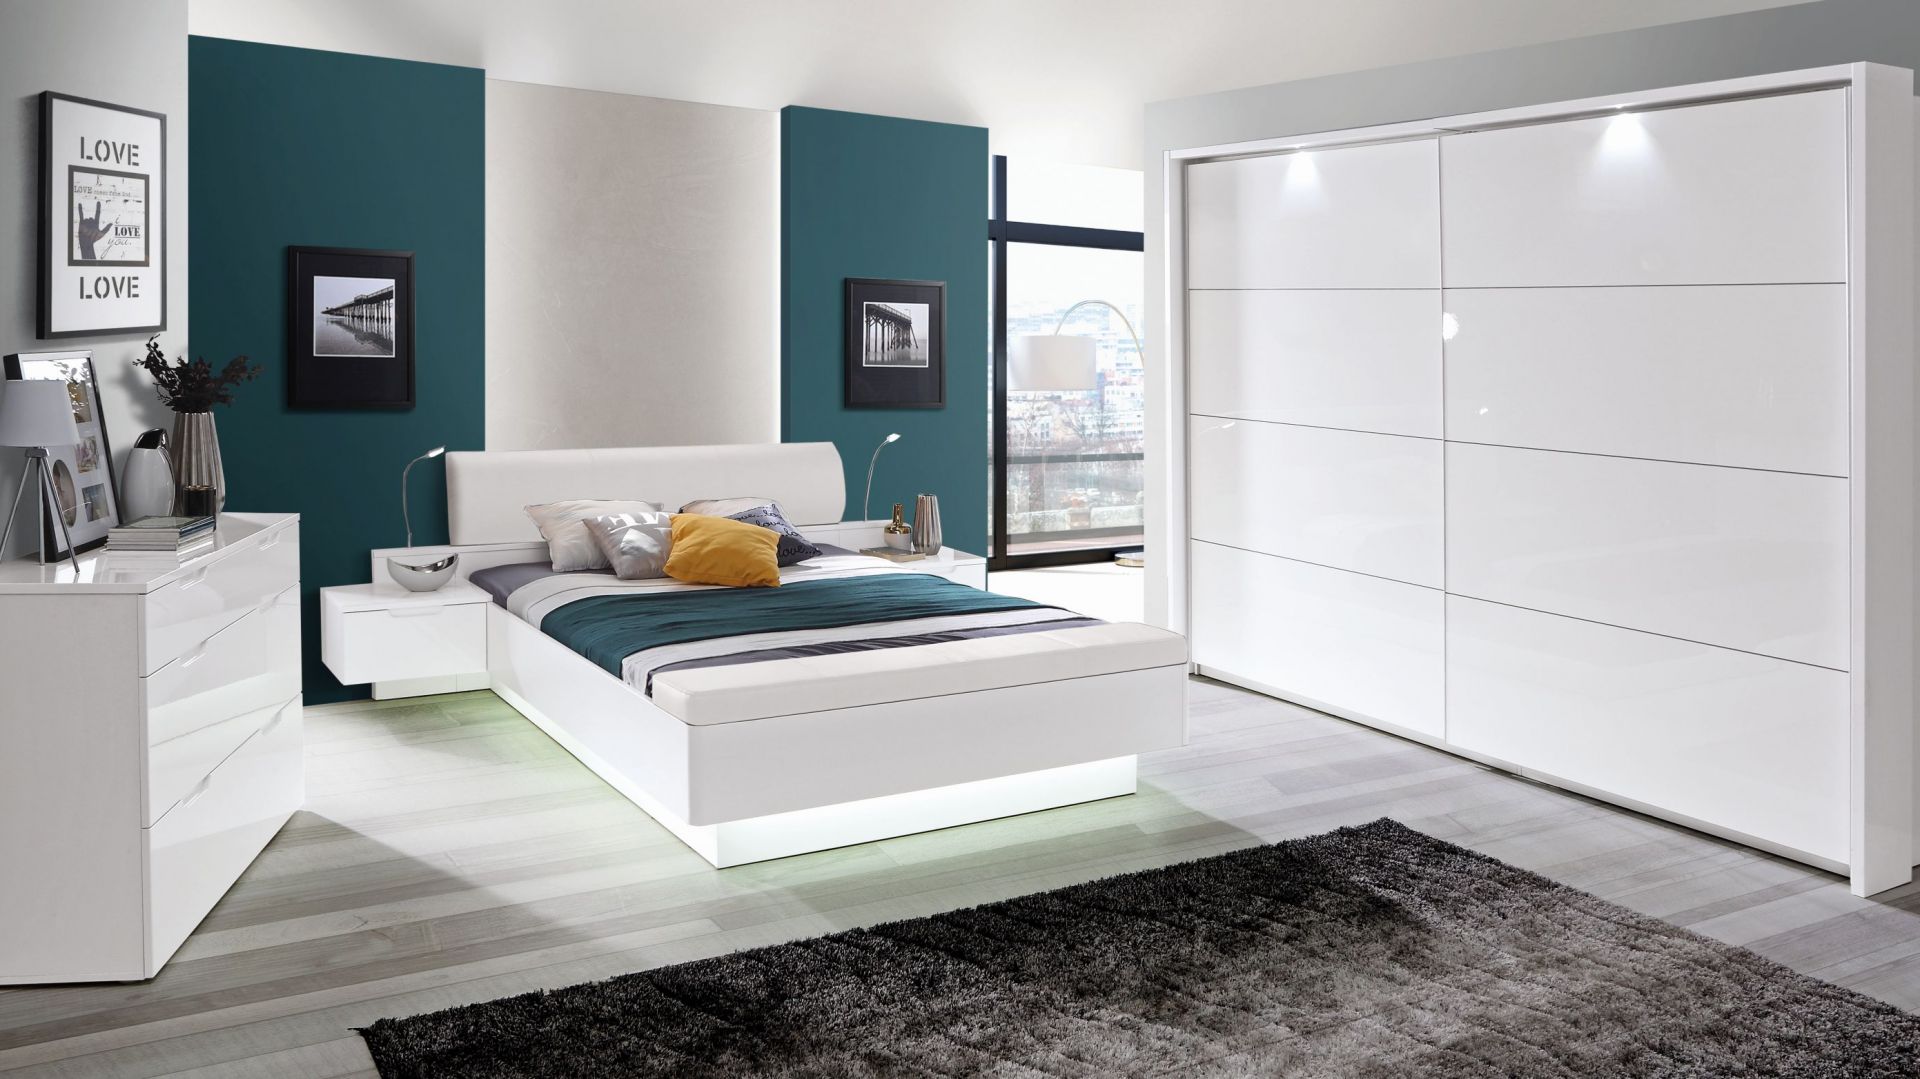 Sypialnia w bieli - stwórz eleganckie i modne wnętrze!